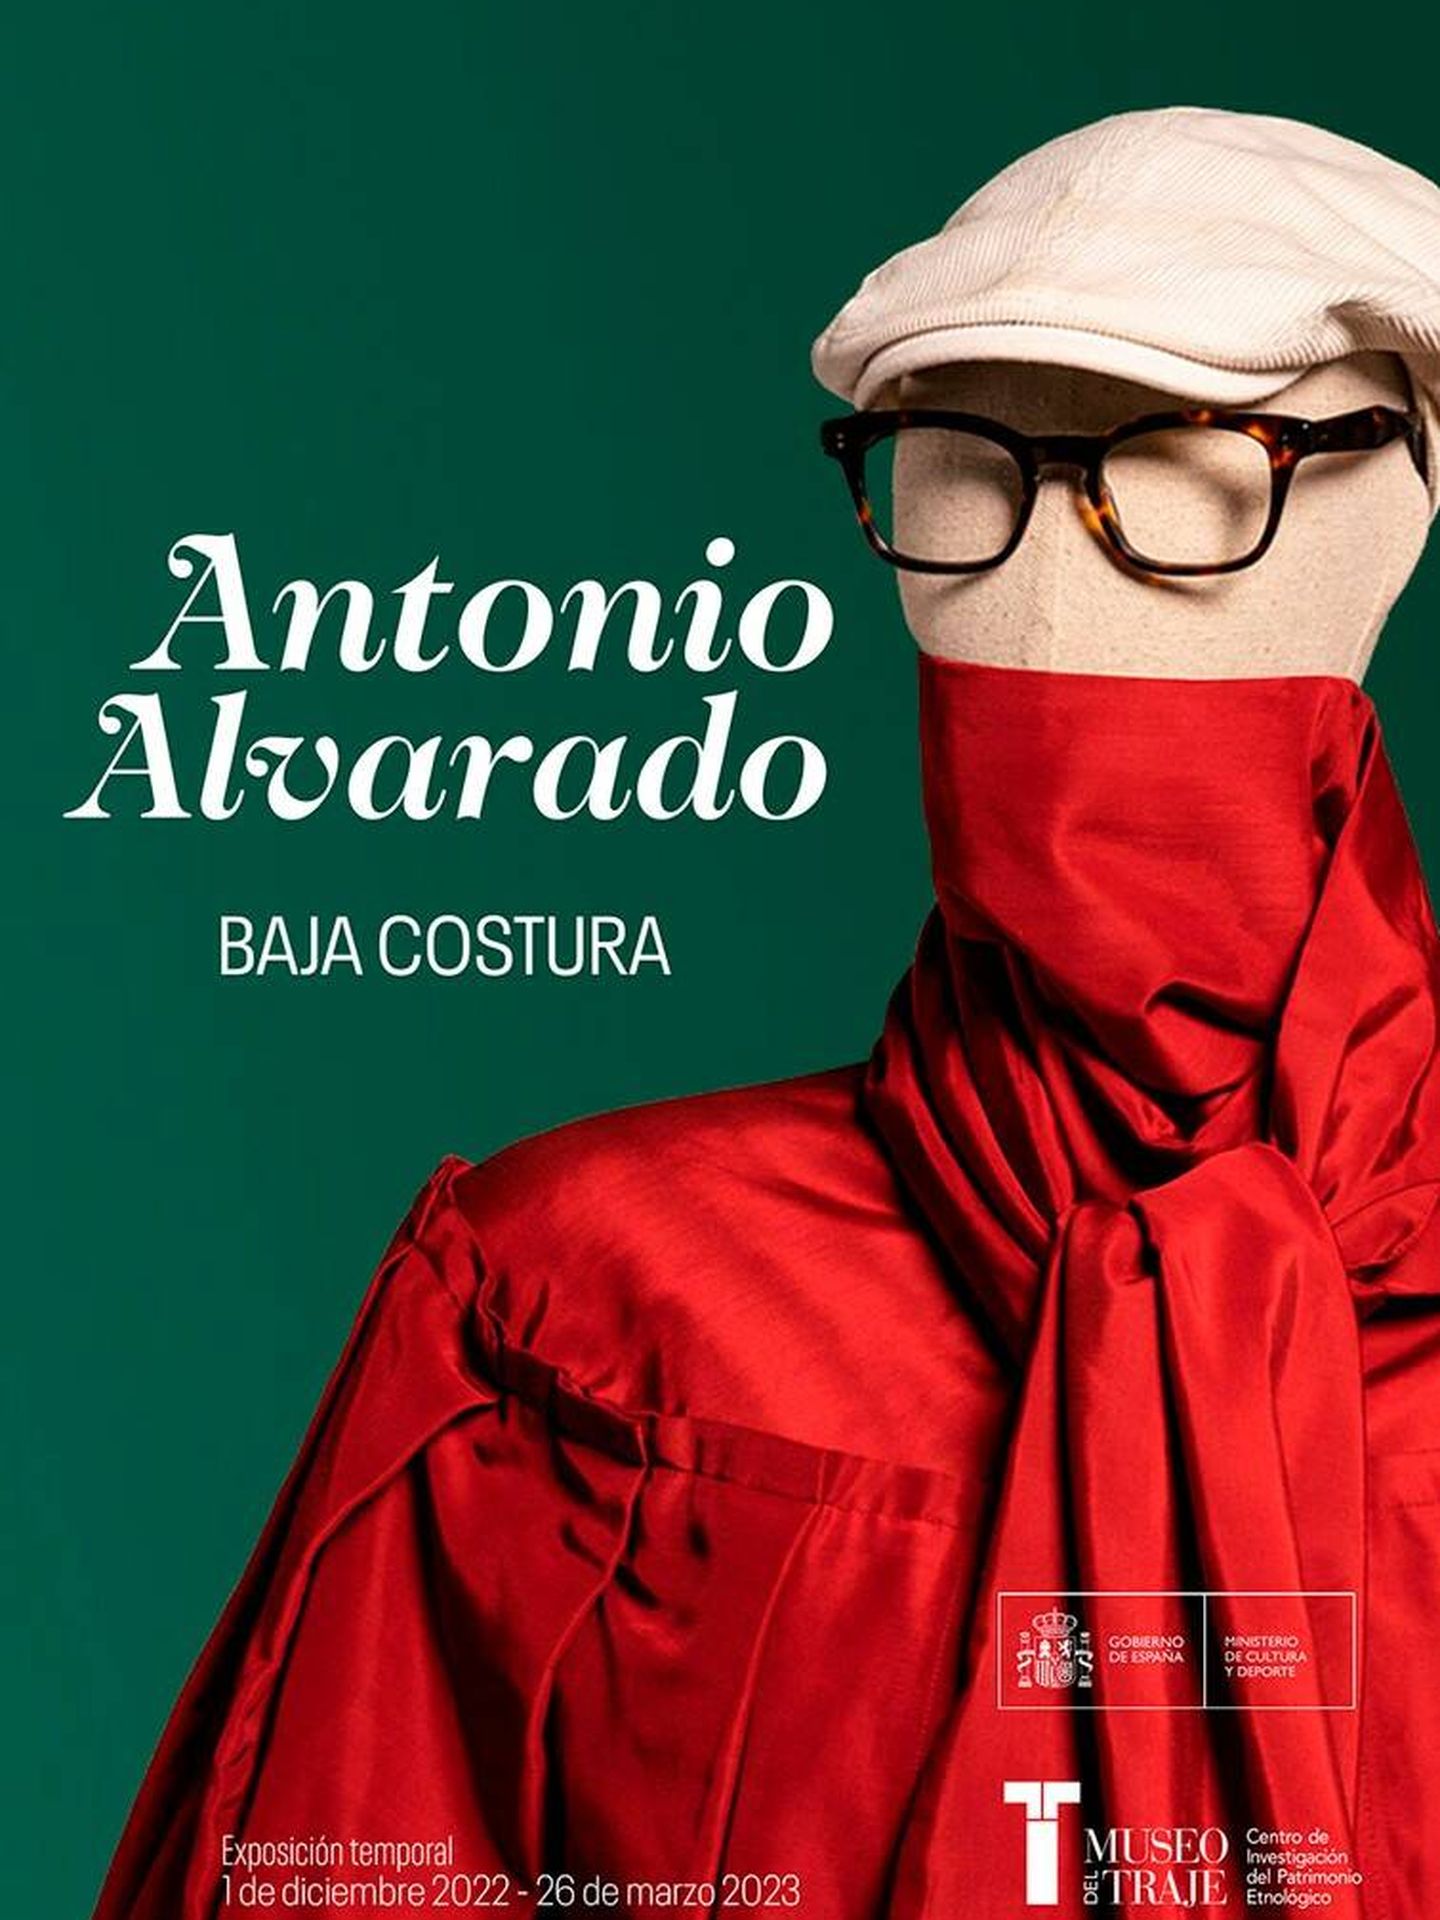 Antonio Alvarado. Baja costura. (Cortesía)